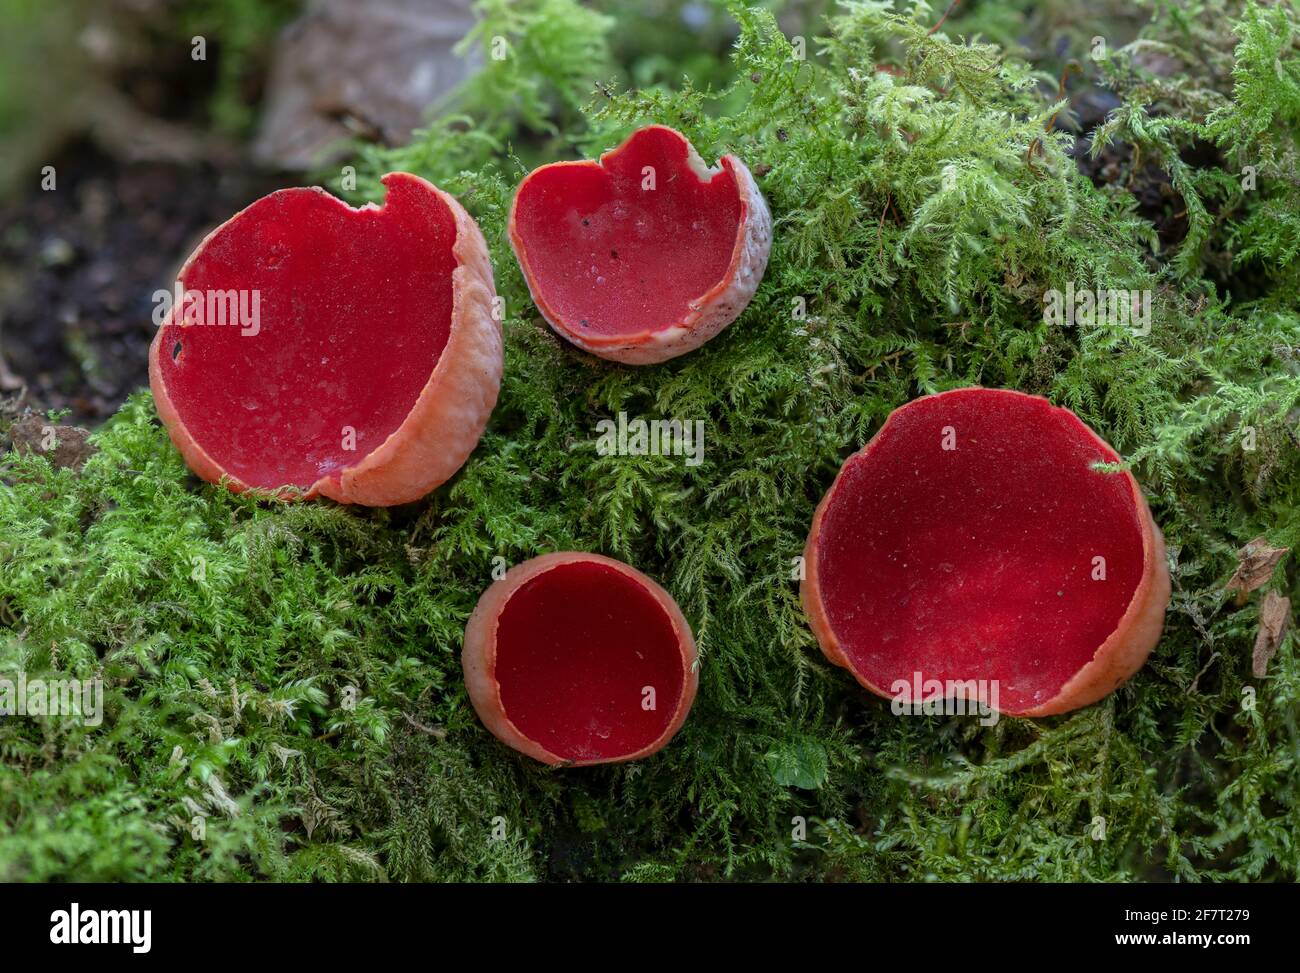 Coppa di scarlatto, Sarcoscopypha coccinea, ( Peziza coccinea ) che cresce abbondantemente in boschi di muschio in inverno. Foto Stock